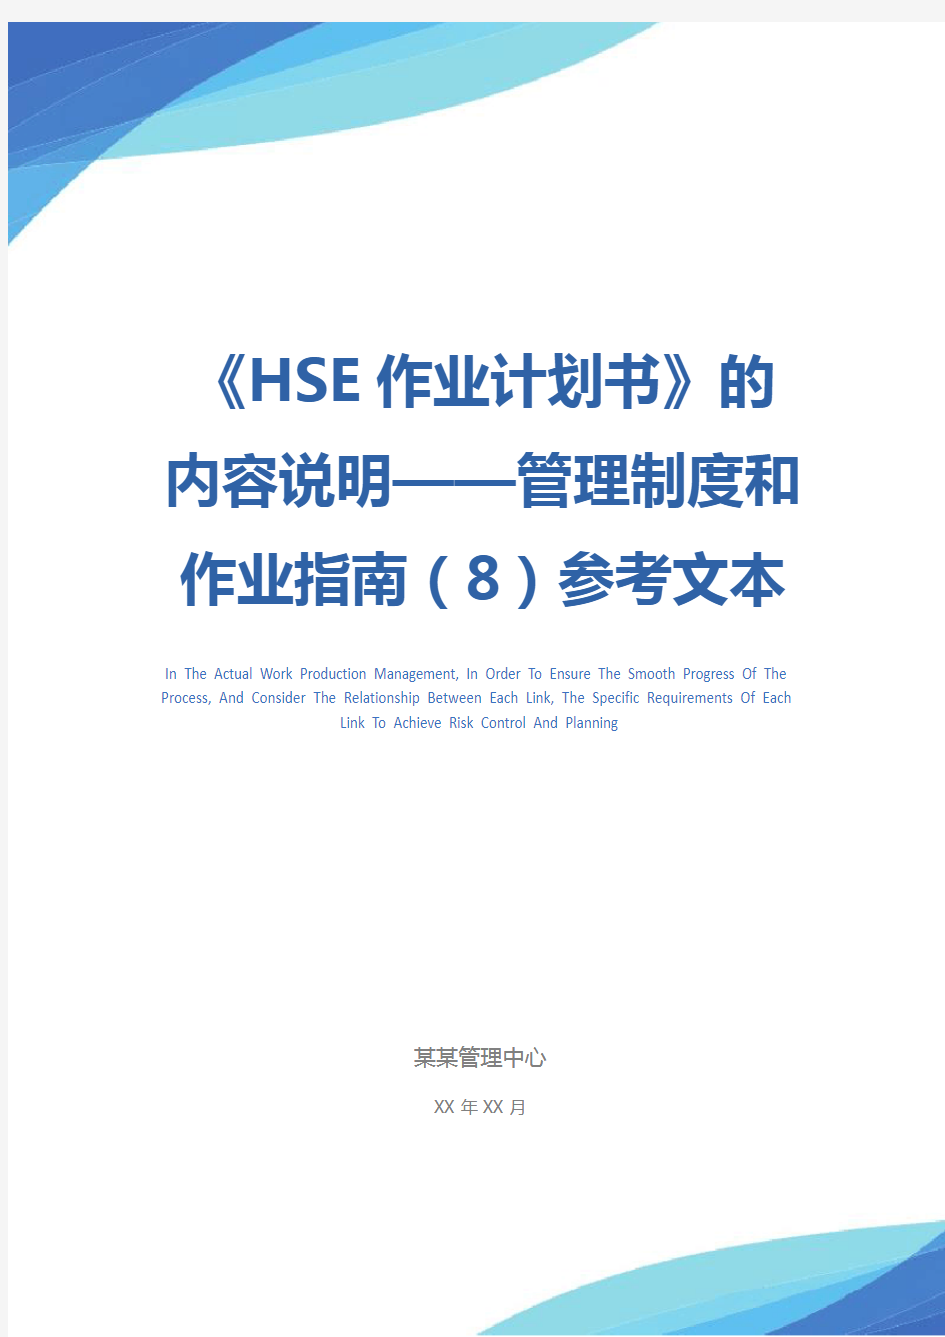 《HSE作业计划书》的内容说明——管理制度和作业指南(8)参考文本